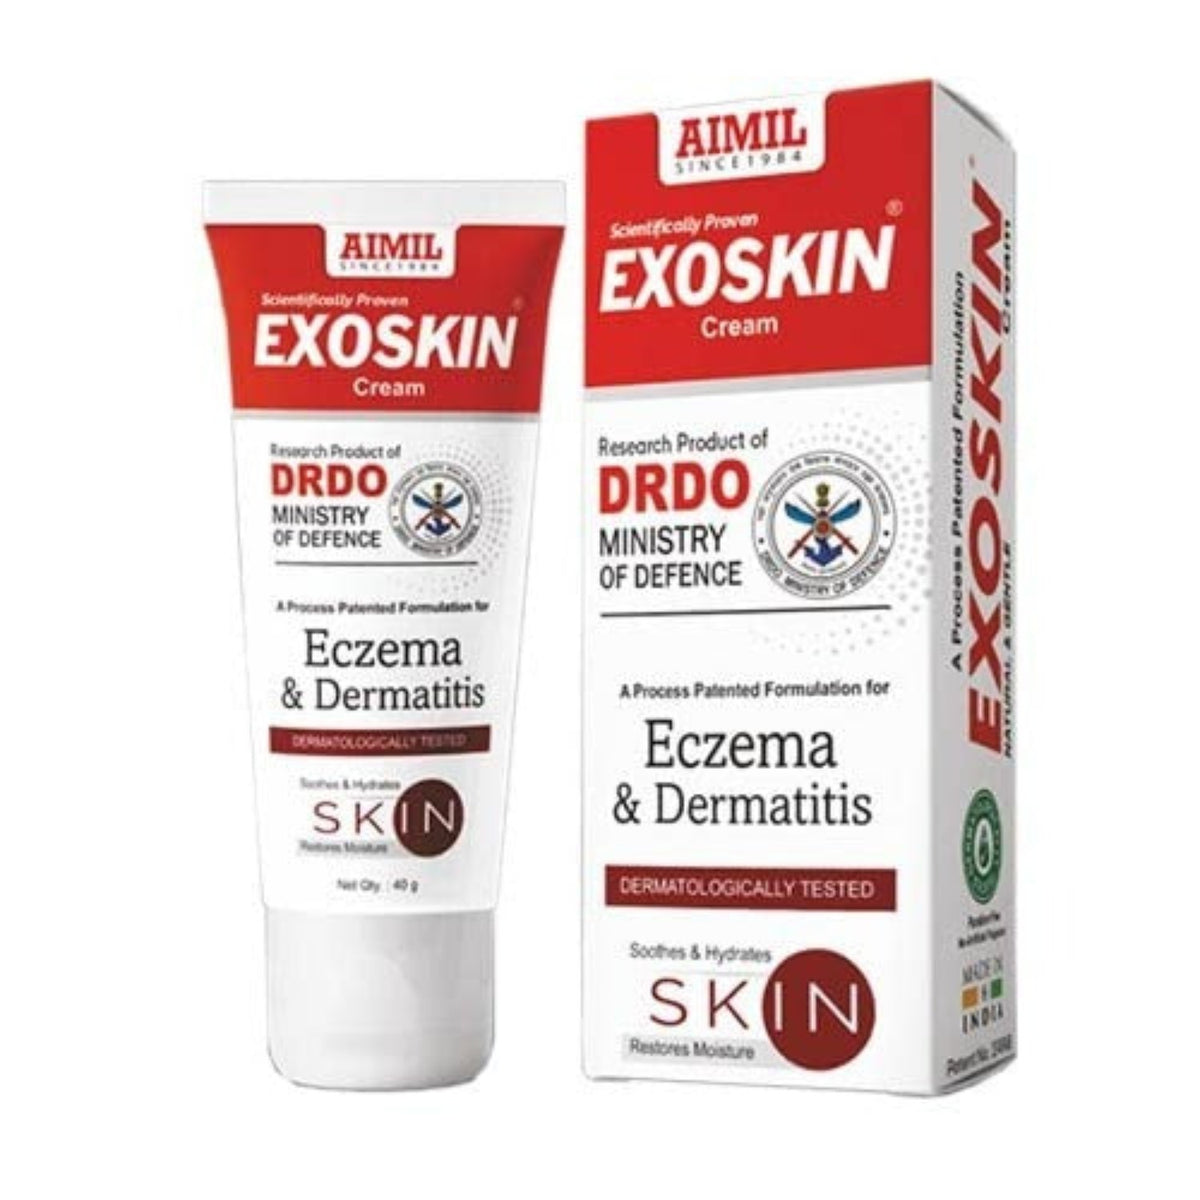 Aimil Ayurvedic Exoskin reduziert Juckreiz und Rötungen, spendet der Haut Feuchtigkeit, beruhigt Blasencreme, 40 g